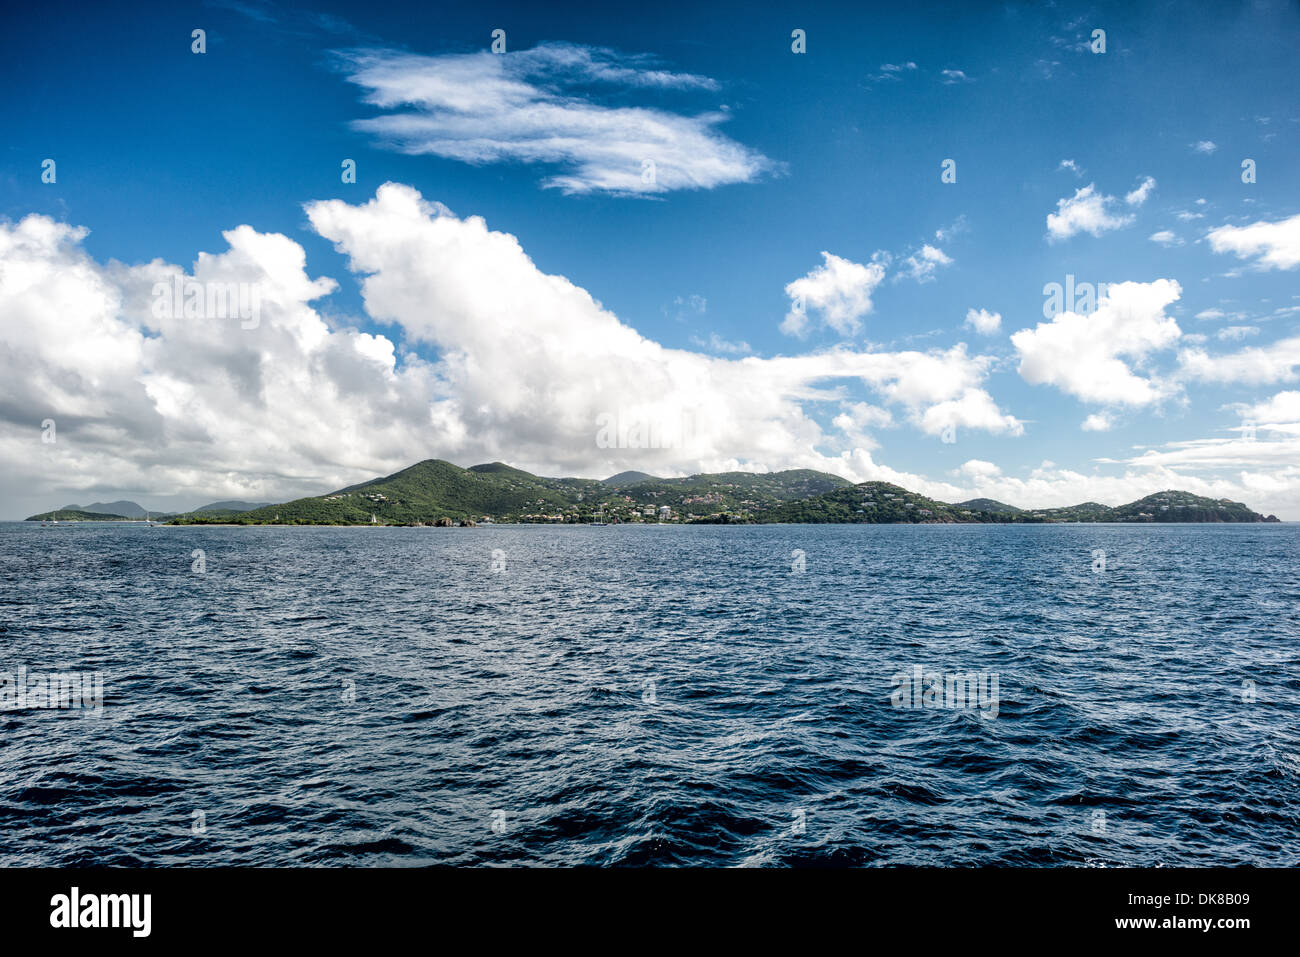 Une vue de St John dans les îles Vierges américaines comme vu de mi-chemin à St Thomas. Connue pour sa vie marine diversifiée et ses récifs coralliens, la région des Caraïbes compte parmi les plages les plus belles et les mieux préservées du monde. Banque D'Images